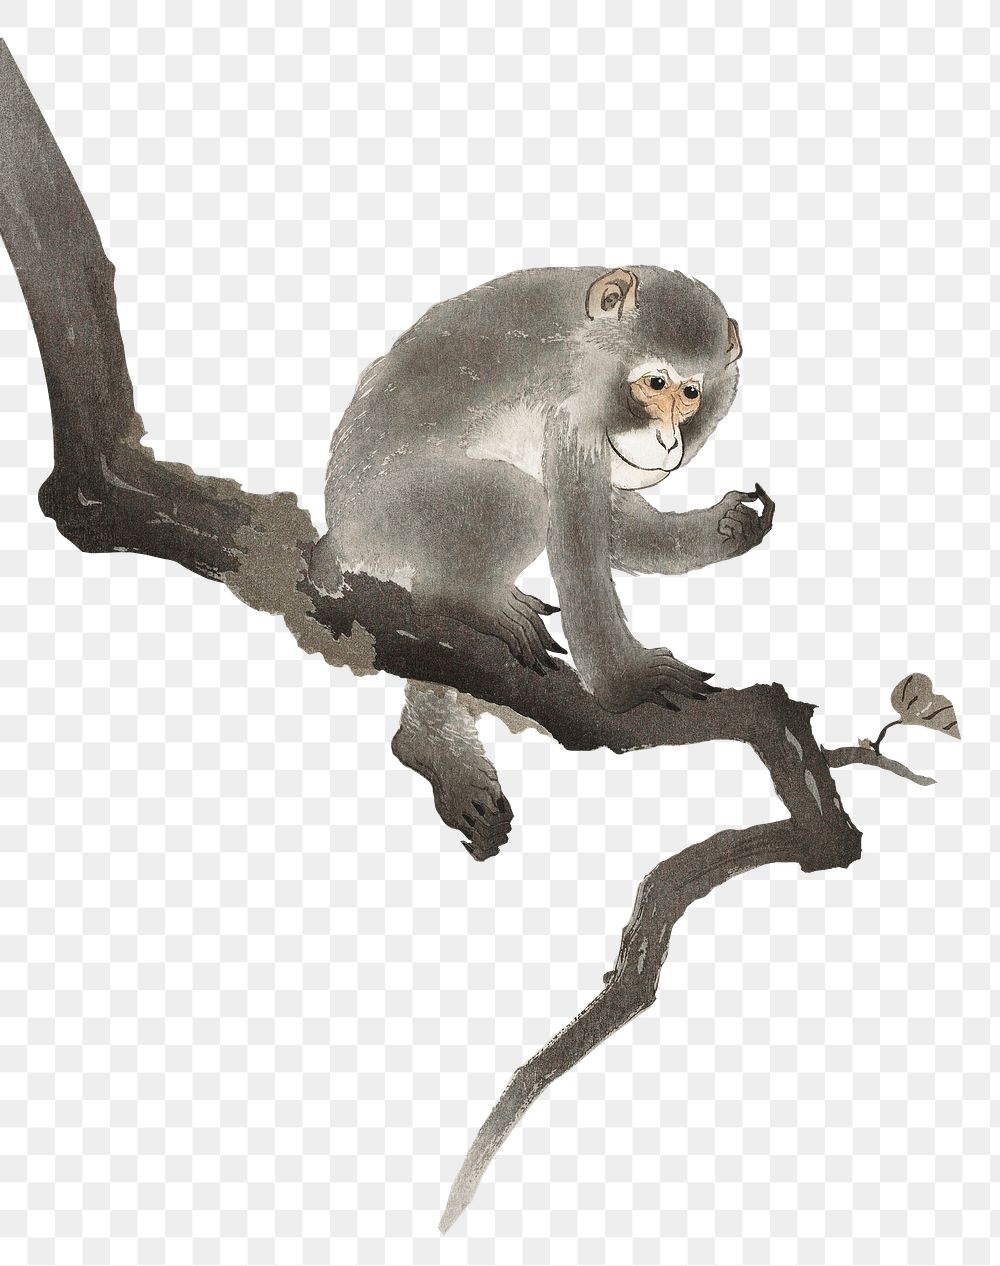 Monkey png tree sticker, vintage animal illustration, transparent background